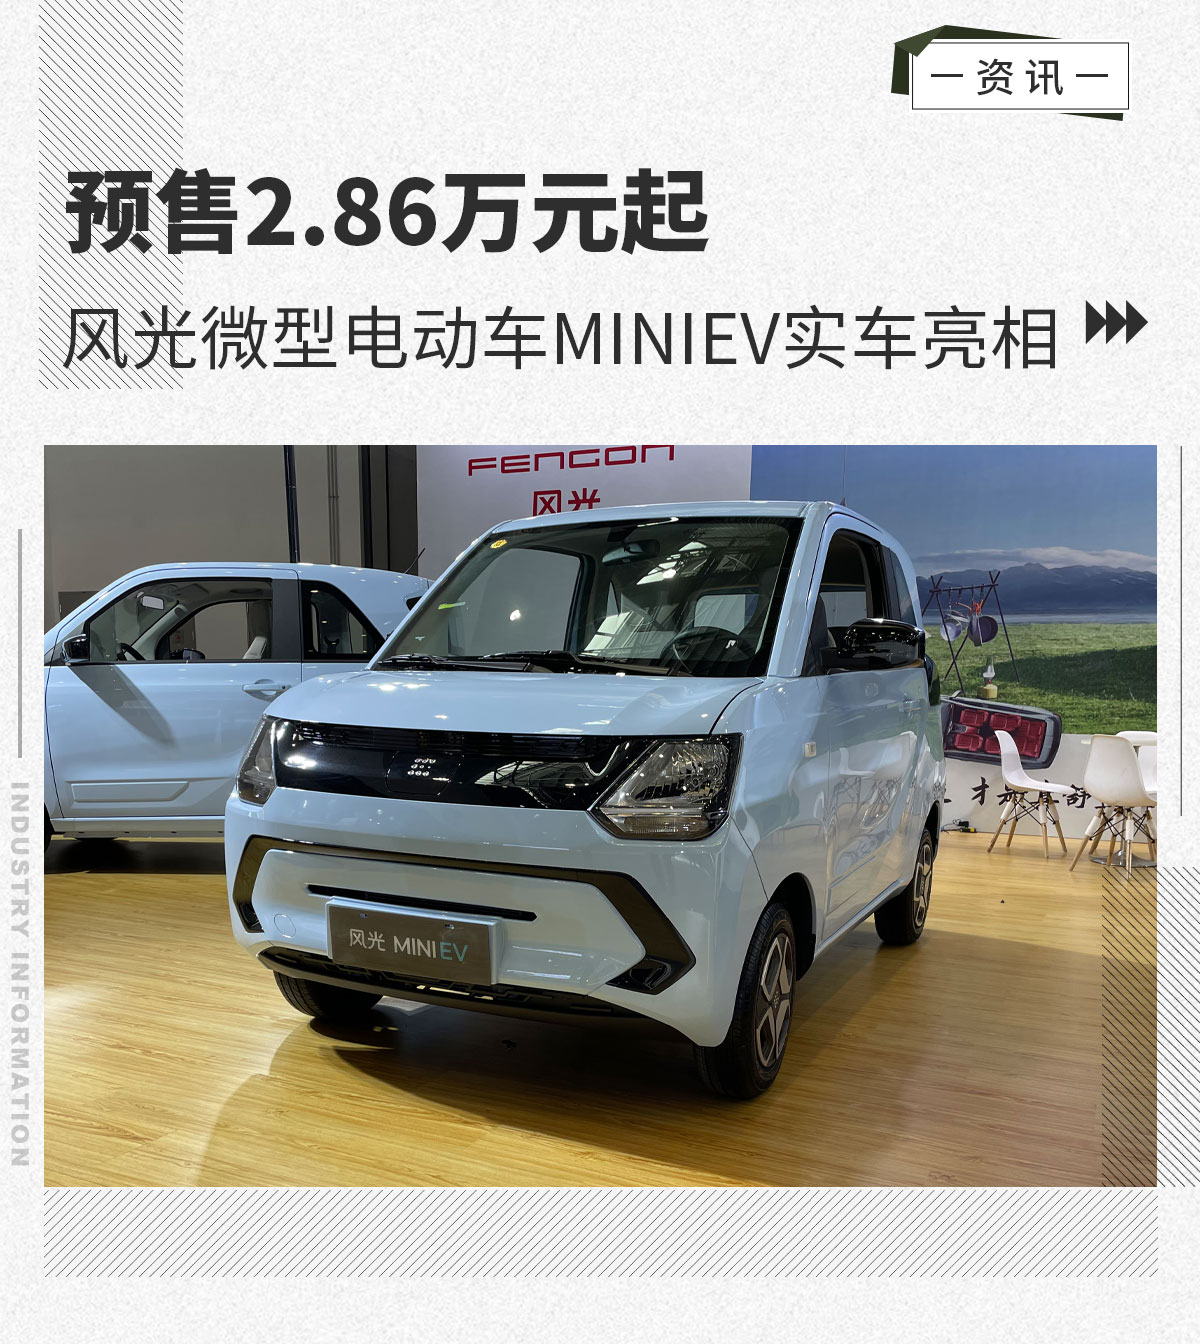 预售2.86万元起 风光微型电动车MINIEV实车亮相